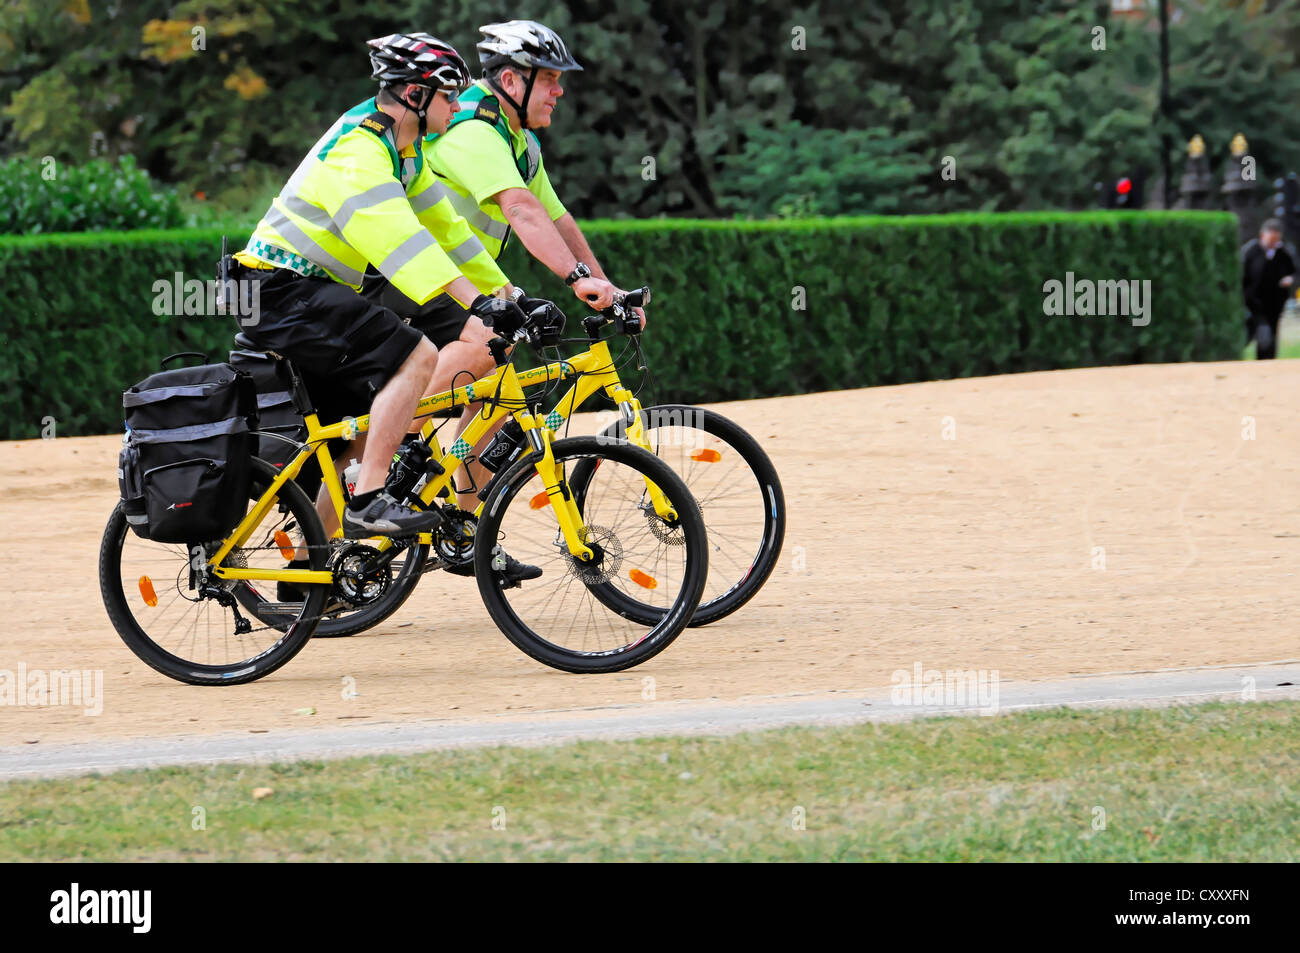 Deux agents de police sur les bicyclettes, patrouille à vélo, à Hyde Park, Londres, Angleterre, Royaume-Uni, Europe Banque D'Images